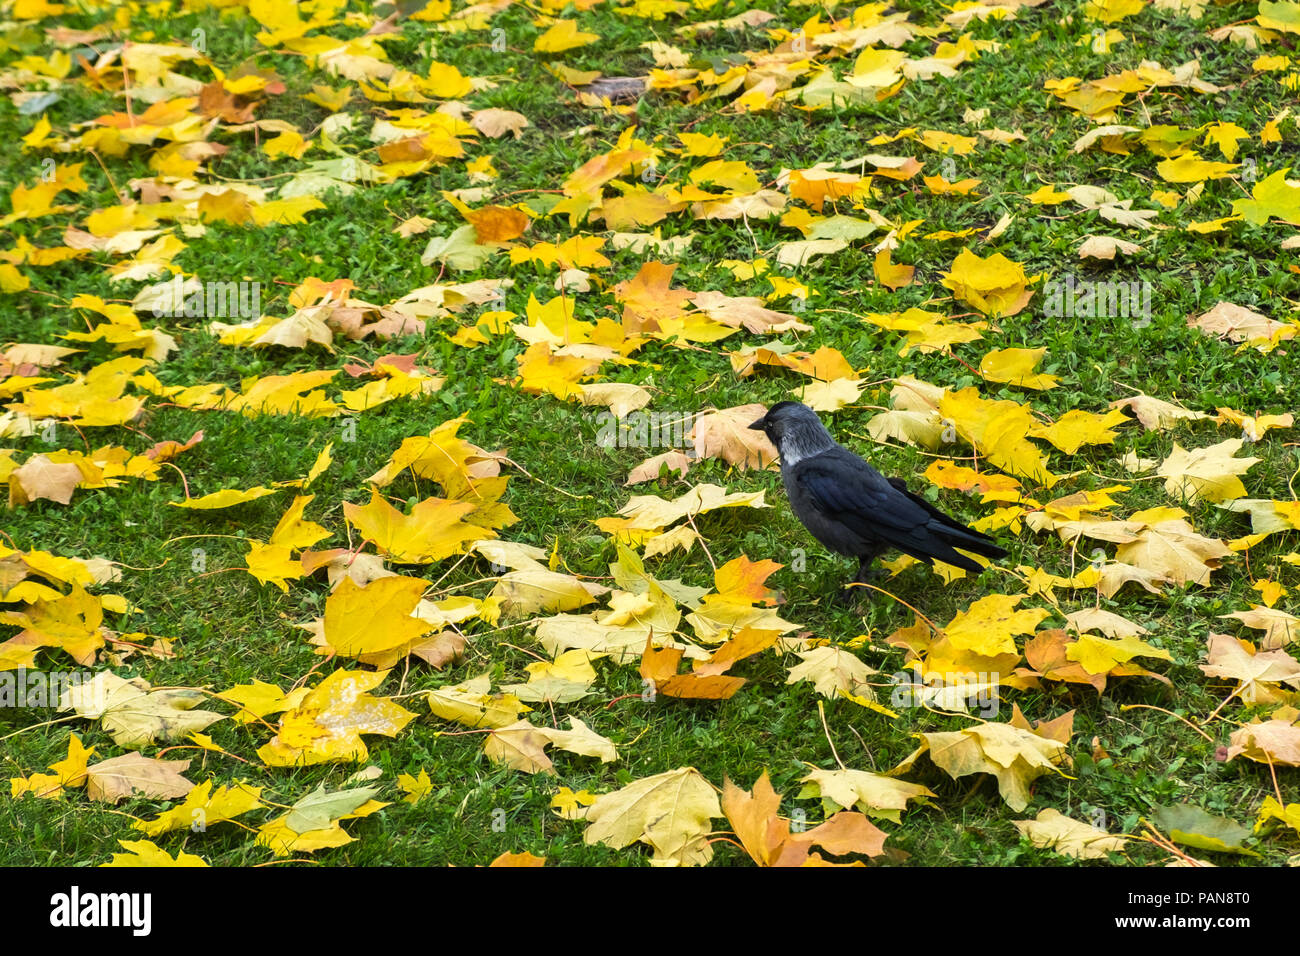 Western jackdaw (Coloeus monedula) de pie en el césped entre Amarillo otoño hojas de arce. Solo de aves salvajes en busca de alimento. Fauna de la ciudad. Foto de stock